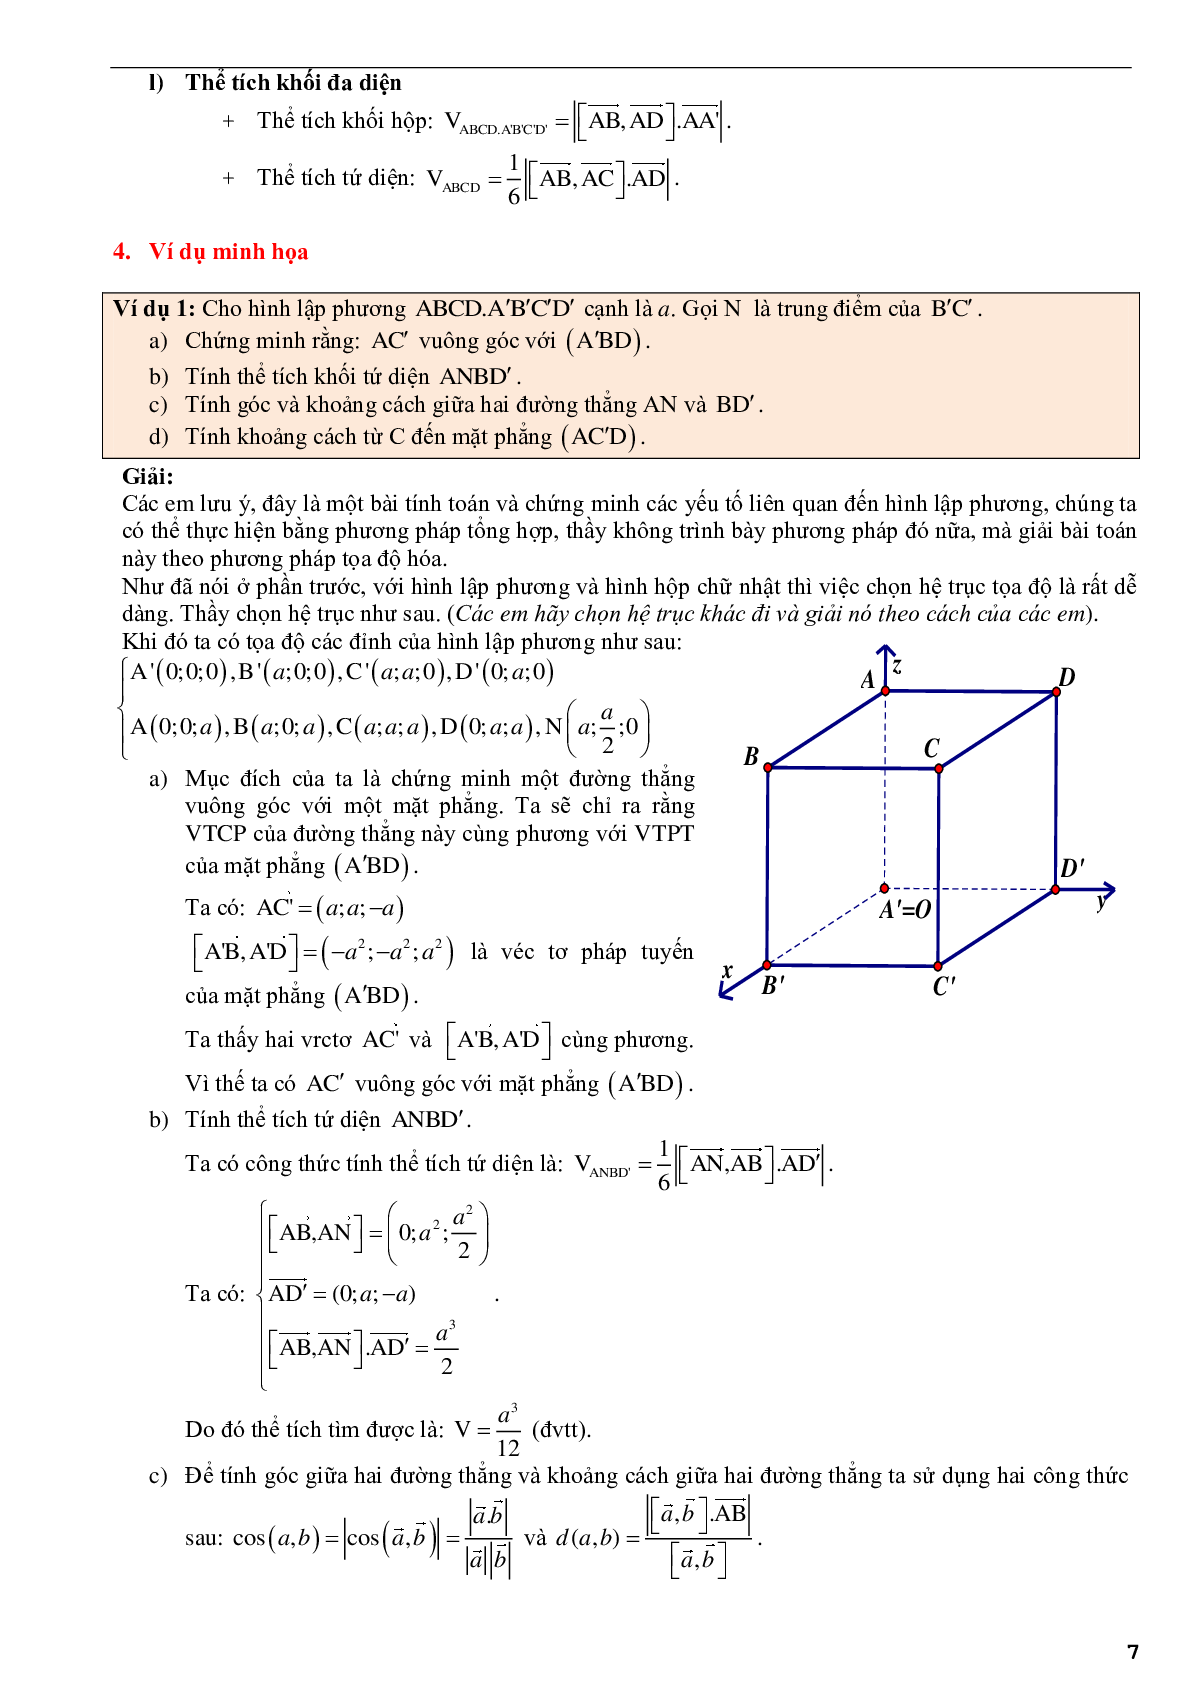 Ứng dụng phương pháp tọa độ để giải bài toán hình học không gian - phần 2 (trang 7)